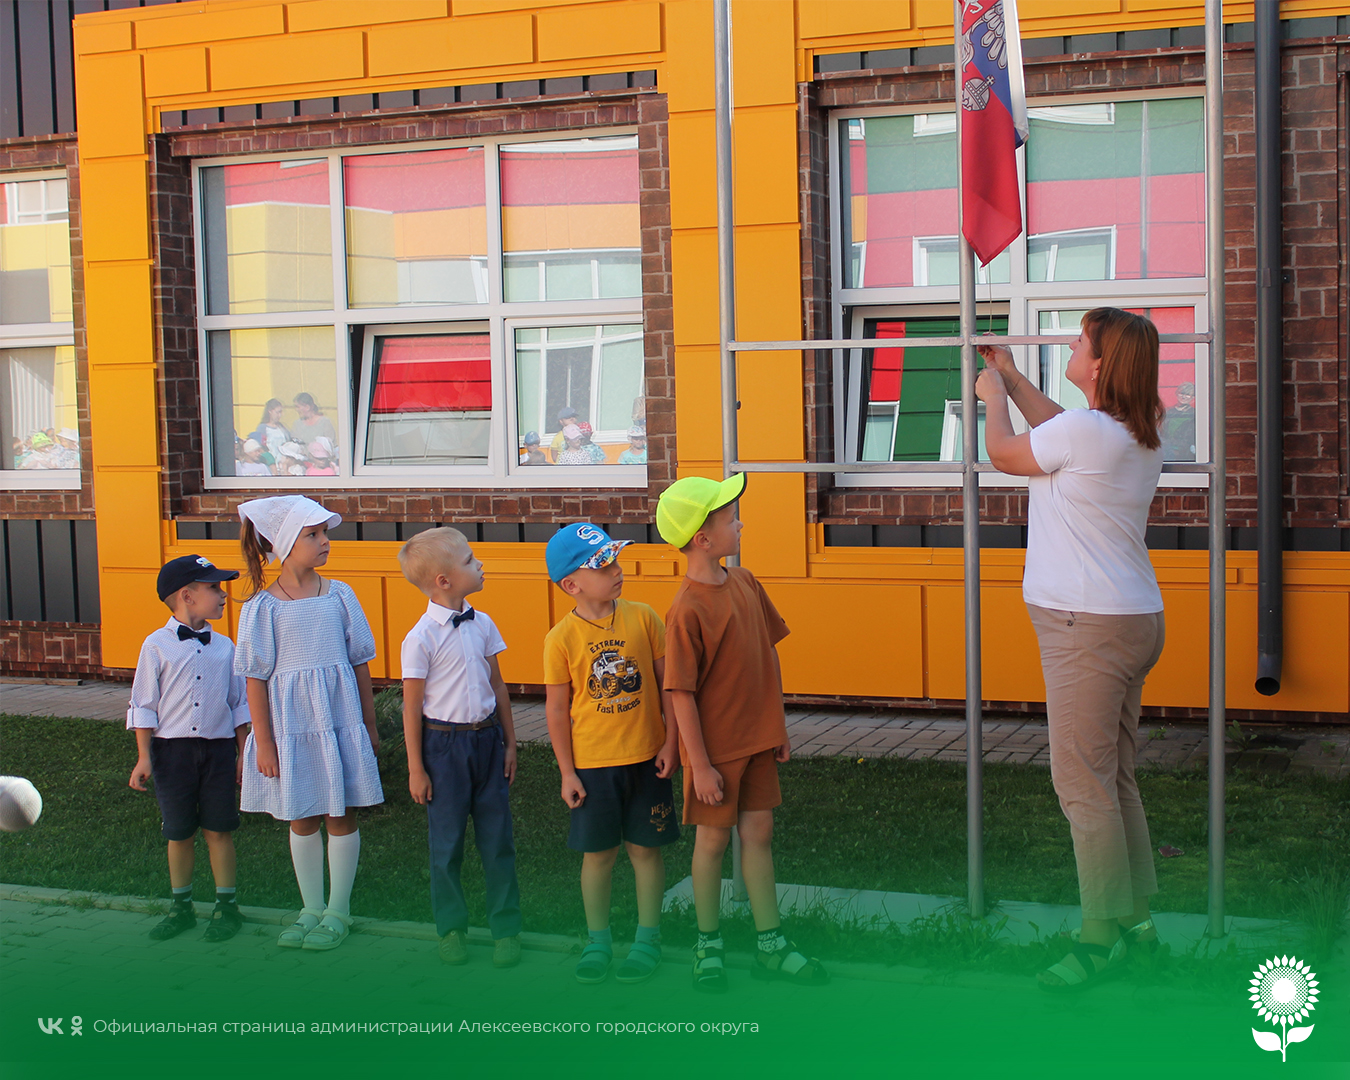 В детских садах Алексеевского городского округа состоялись мероприятия, посвященные Дню знаний.